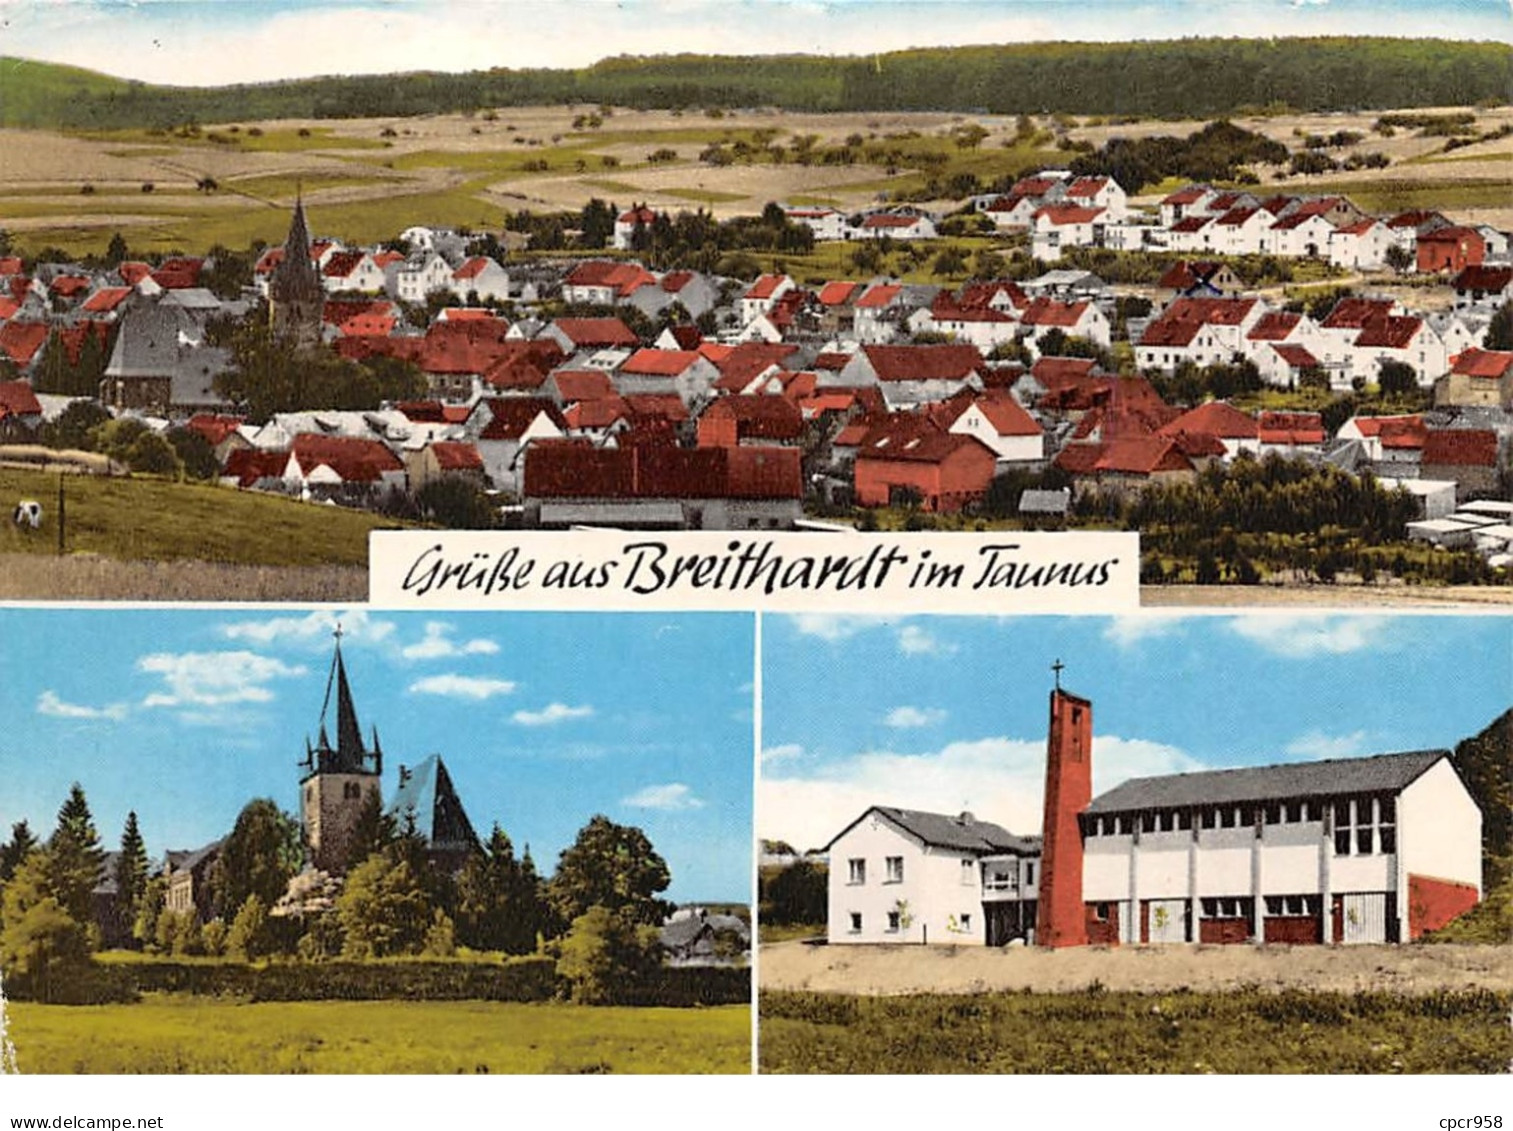 Allemagne - N°63513 - Hohnenstein-Breithardt Im Taunus - Gruss Aud Breithardt Im Taunus - CPSM - Hohnstein (Sächs. Schweiz)